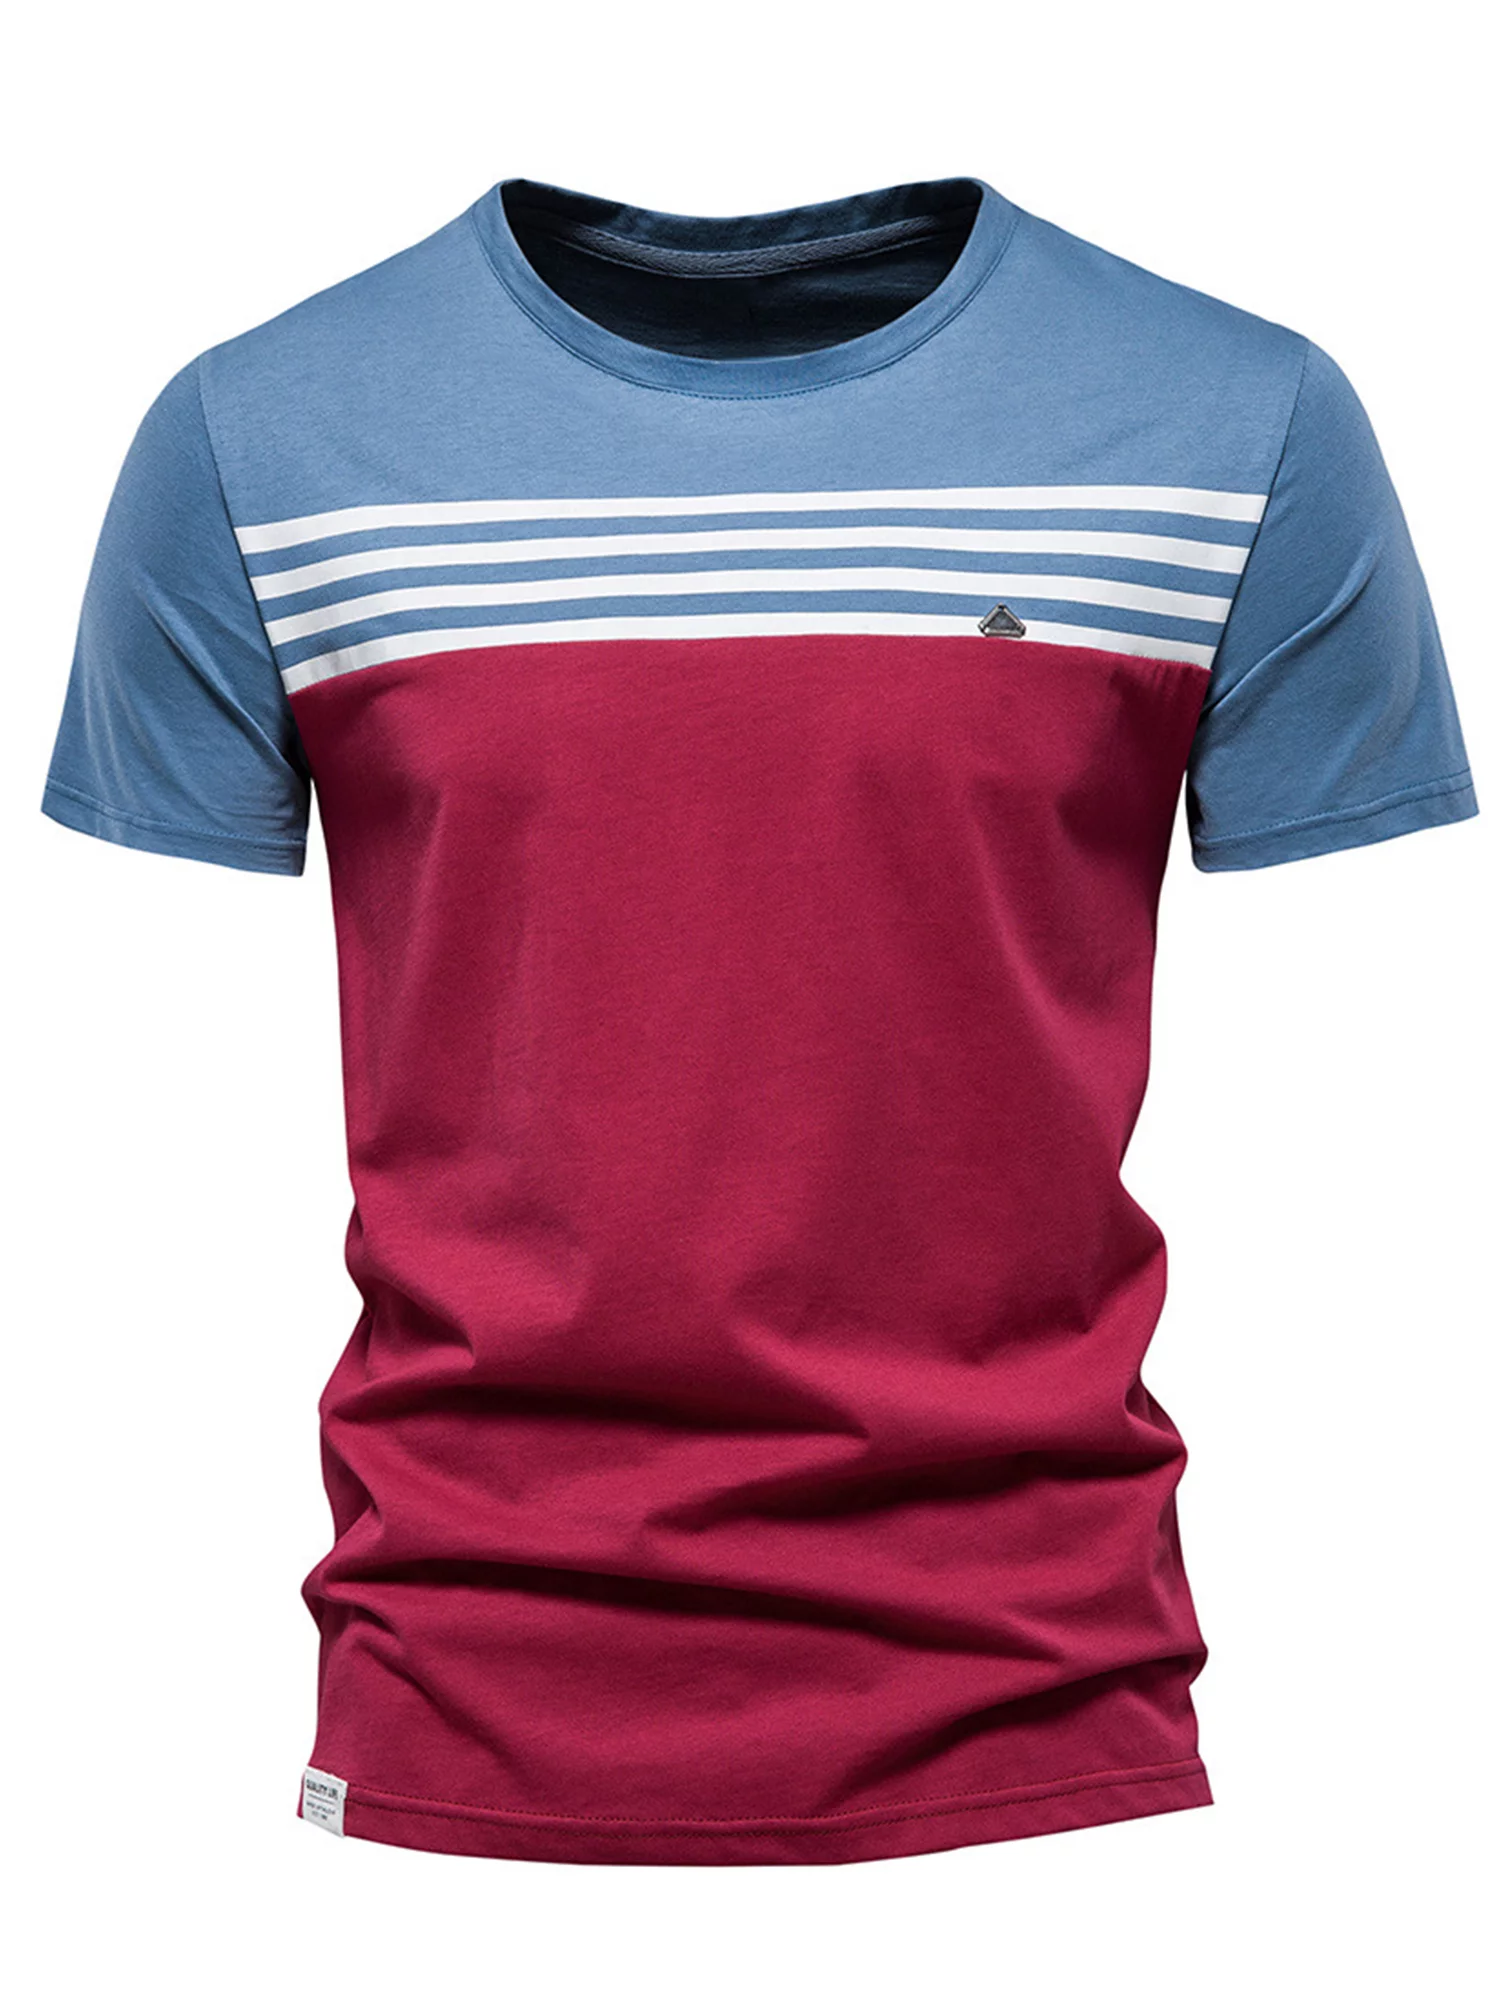 Men Color Block Short Sleeve Tee Shirt Summer Stripe Print Dry Fit Tops Teen Boys Lightweight Casual Beach T Shirts